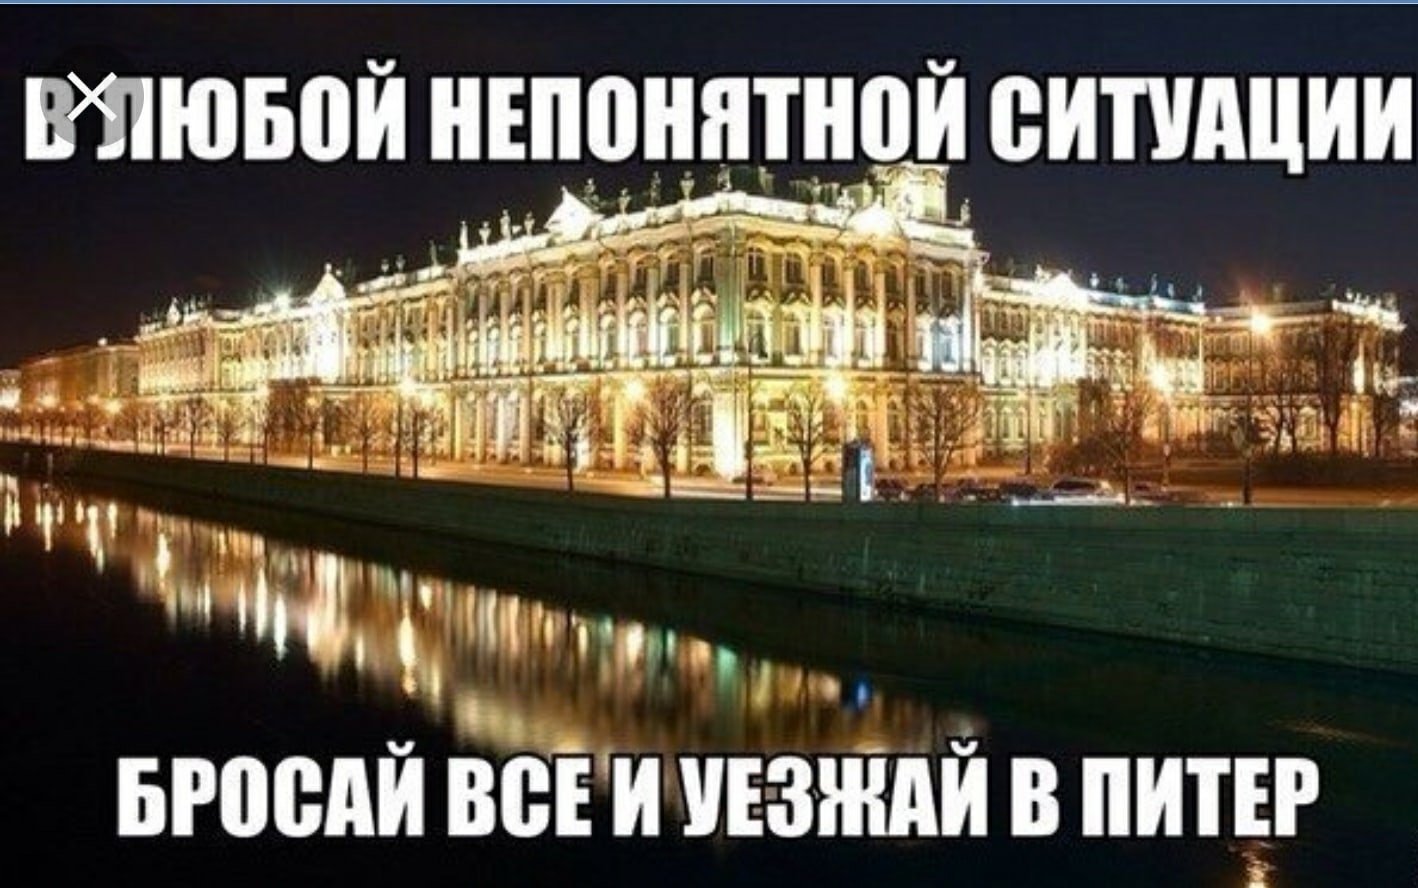 Ну переезжай. Эрмитаж 1764. Эрмитаж в 1764 году. Зимний дворец Санкт-Петербург Екатерины. Хорошего отдыха в Питере.